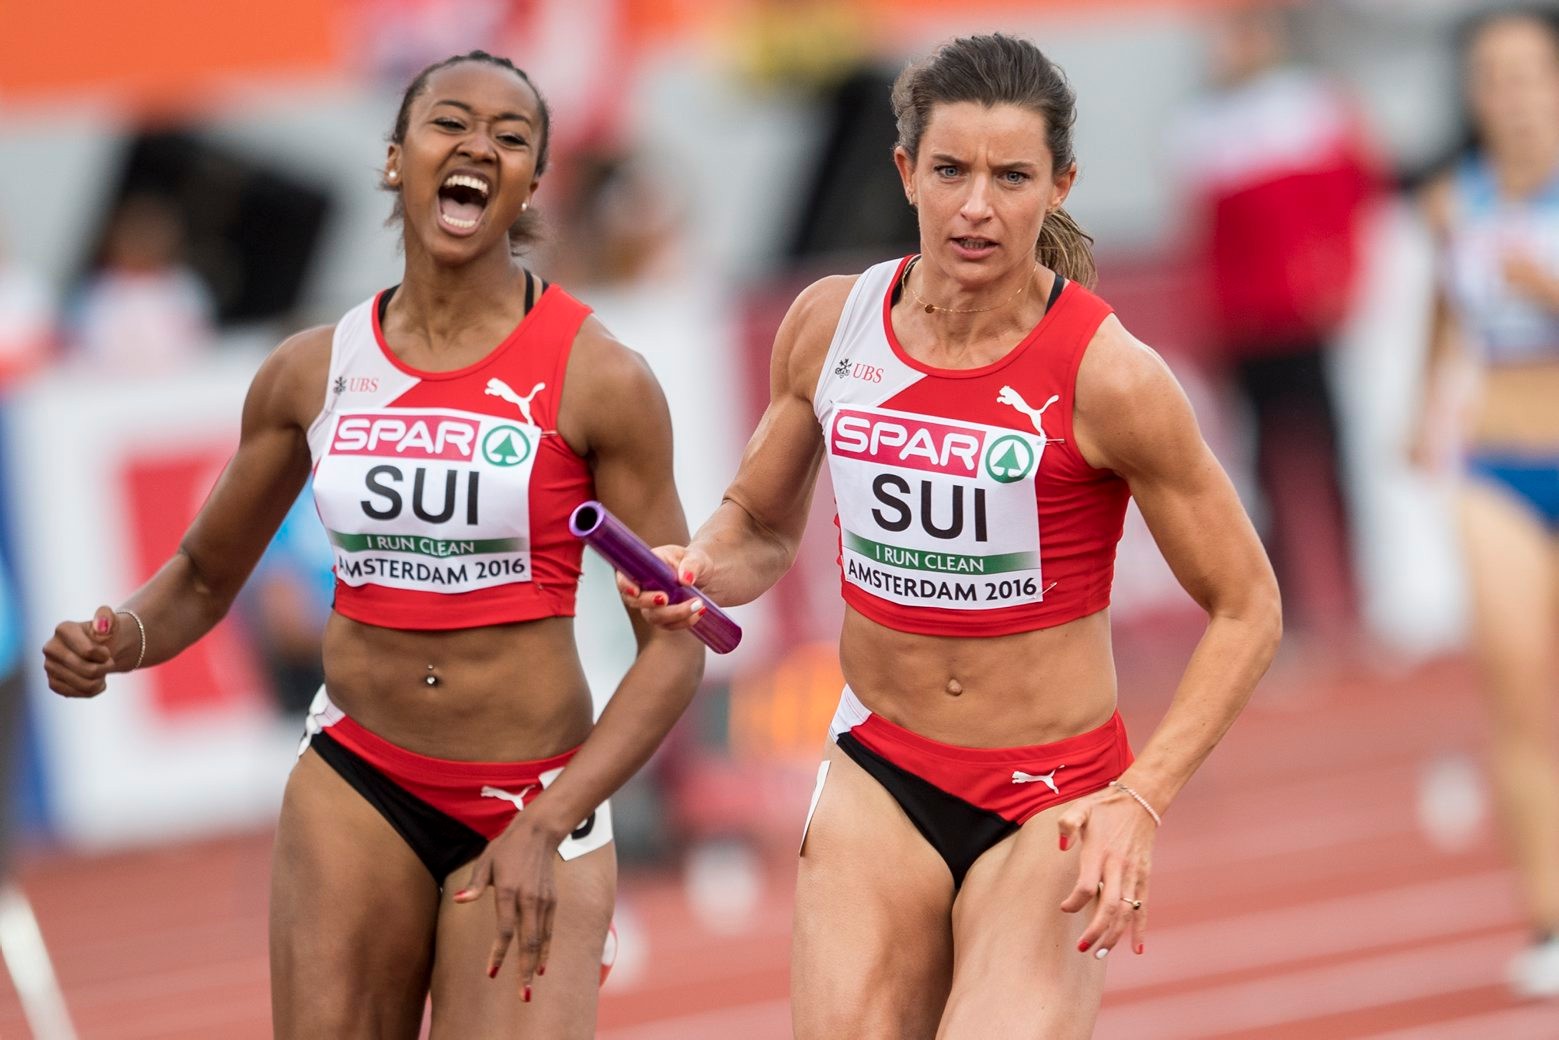 ALS VORSCHAU ZU DEN OLYMPISCHEN SOMMERSPIELEN IN RIO VOM 5. BIS 21. AUGUST 2016 STELLEN WIR IHNEN FOLGENDES BILDMATERIAL ZU DEN SCHWEIZER TEILNEHMERN UND TEILNEHMERINNEN  ZUR VERFUEGUNG - Swiss athlete Sarah Atcho, left, and Ellen Sprunger, right, runs during the 4x100m Relay Women qualification at the 2016 European Athletics Championships in Amsterdam, Netherlands, Saturday, 09 July 2016. The 2016 European Athletics Championships will be held in Amsterdam, Netherlands, from 06 until 10 July 2016. (KEYSTONE/Ennio Leanza) BRASILIEN OLYMPIA RIO 2016 TEAM SCHWEIZ SELEKTIONIERTE